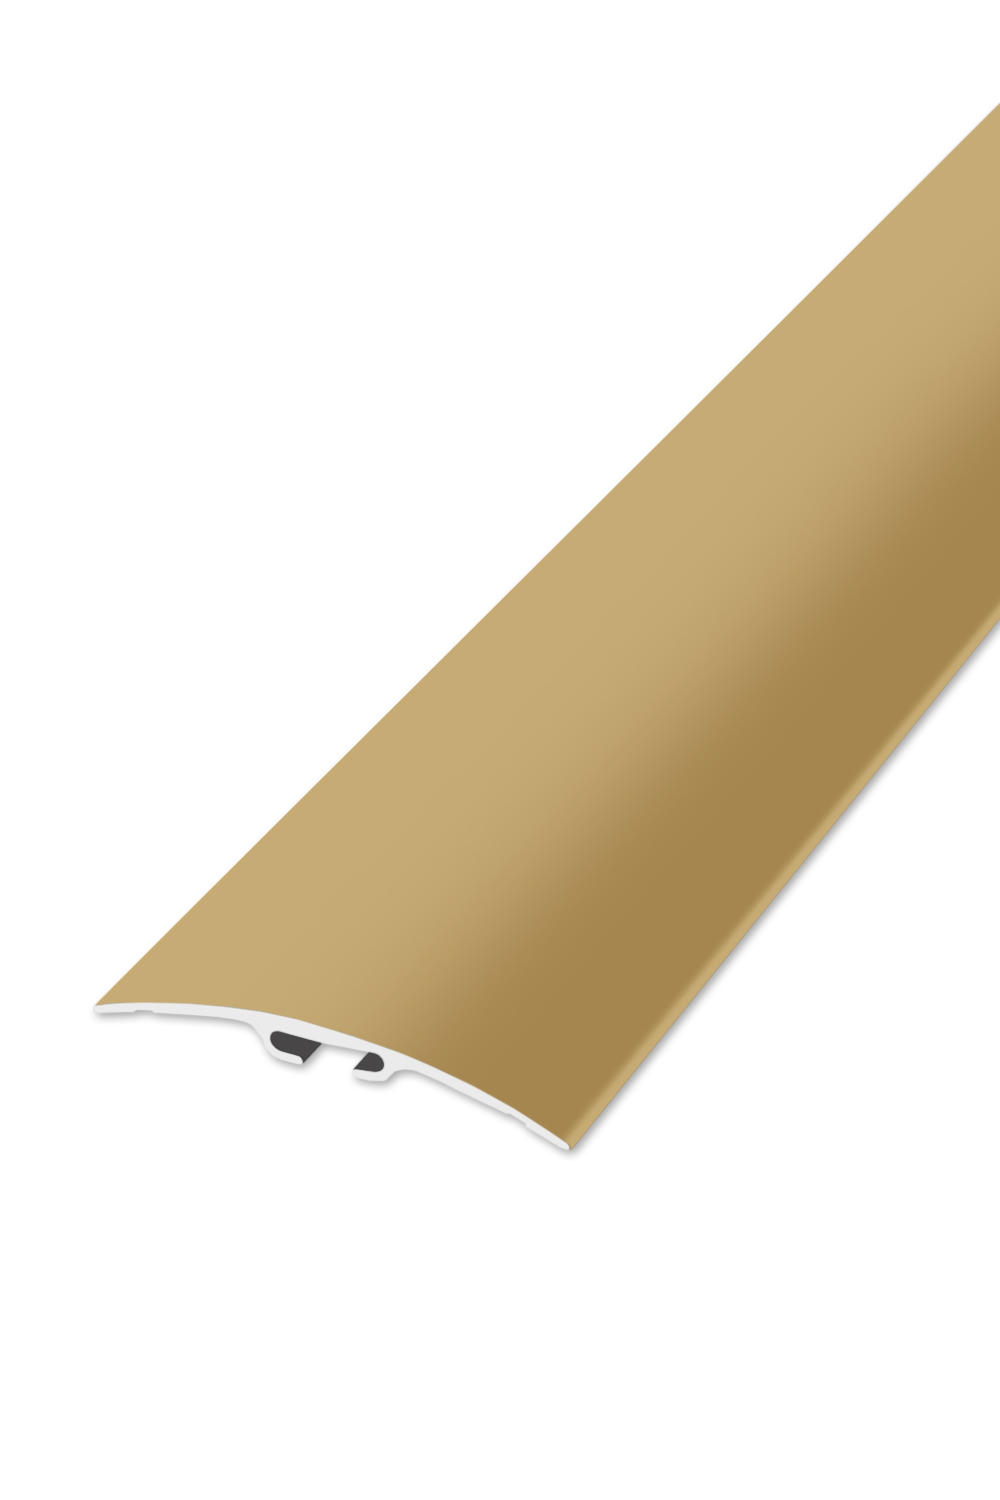 Přechodová lišta STANDARD 60 - Zlatá 270 cm